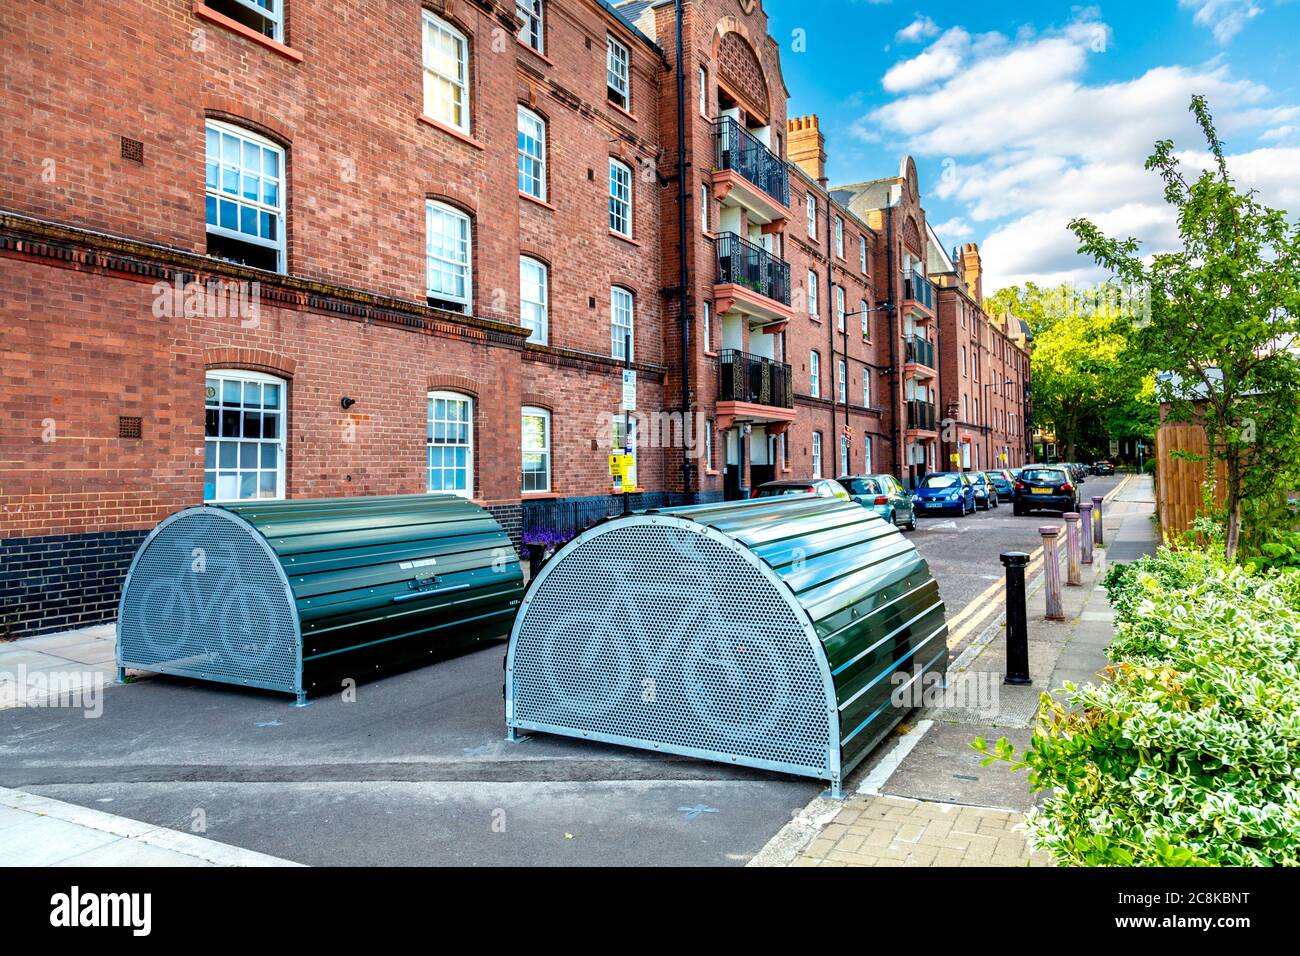 Cyclehoop Bikehangar - refugio de bicicletas en el lado de la carretera, ocupa un espacio de aparcamiento de un coche, Londres, Reino Unido Foto de stock